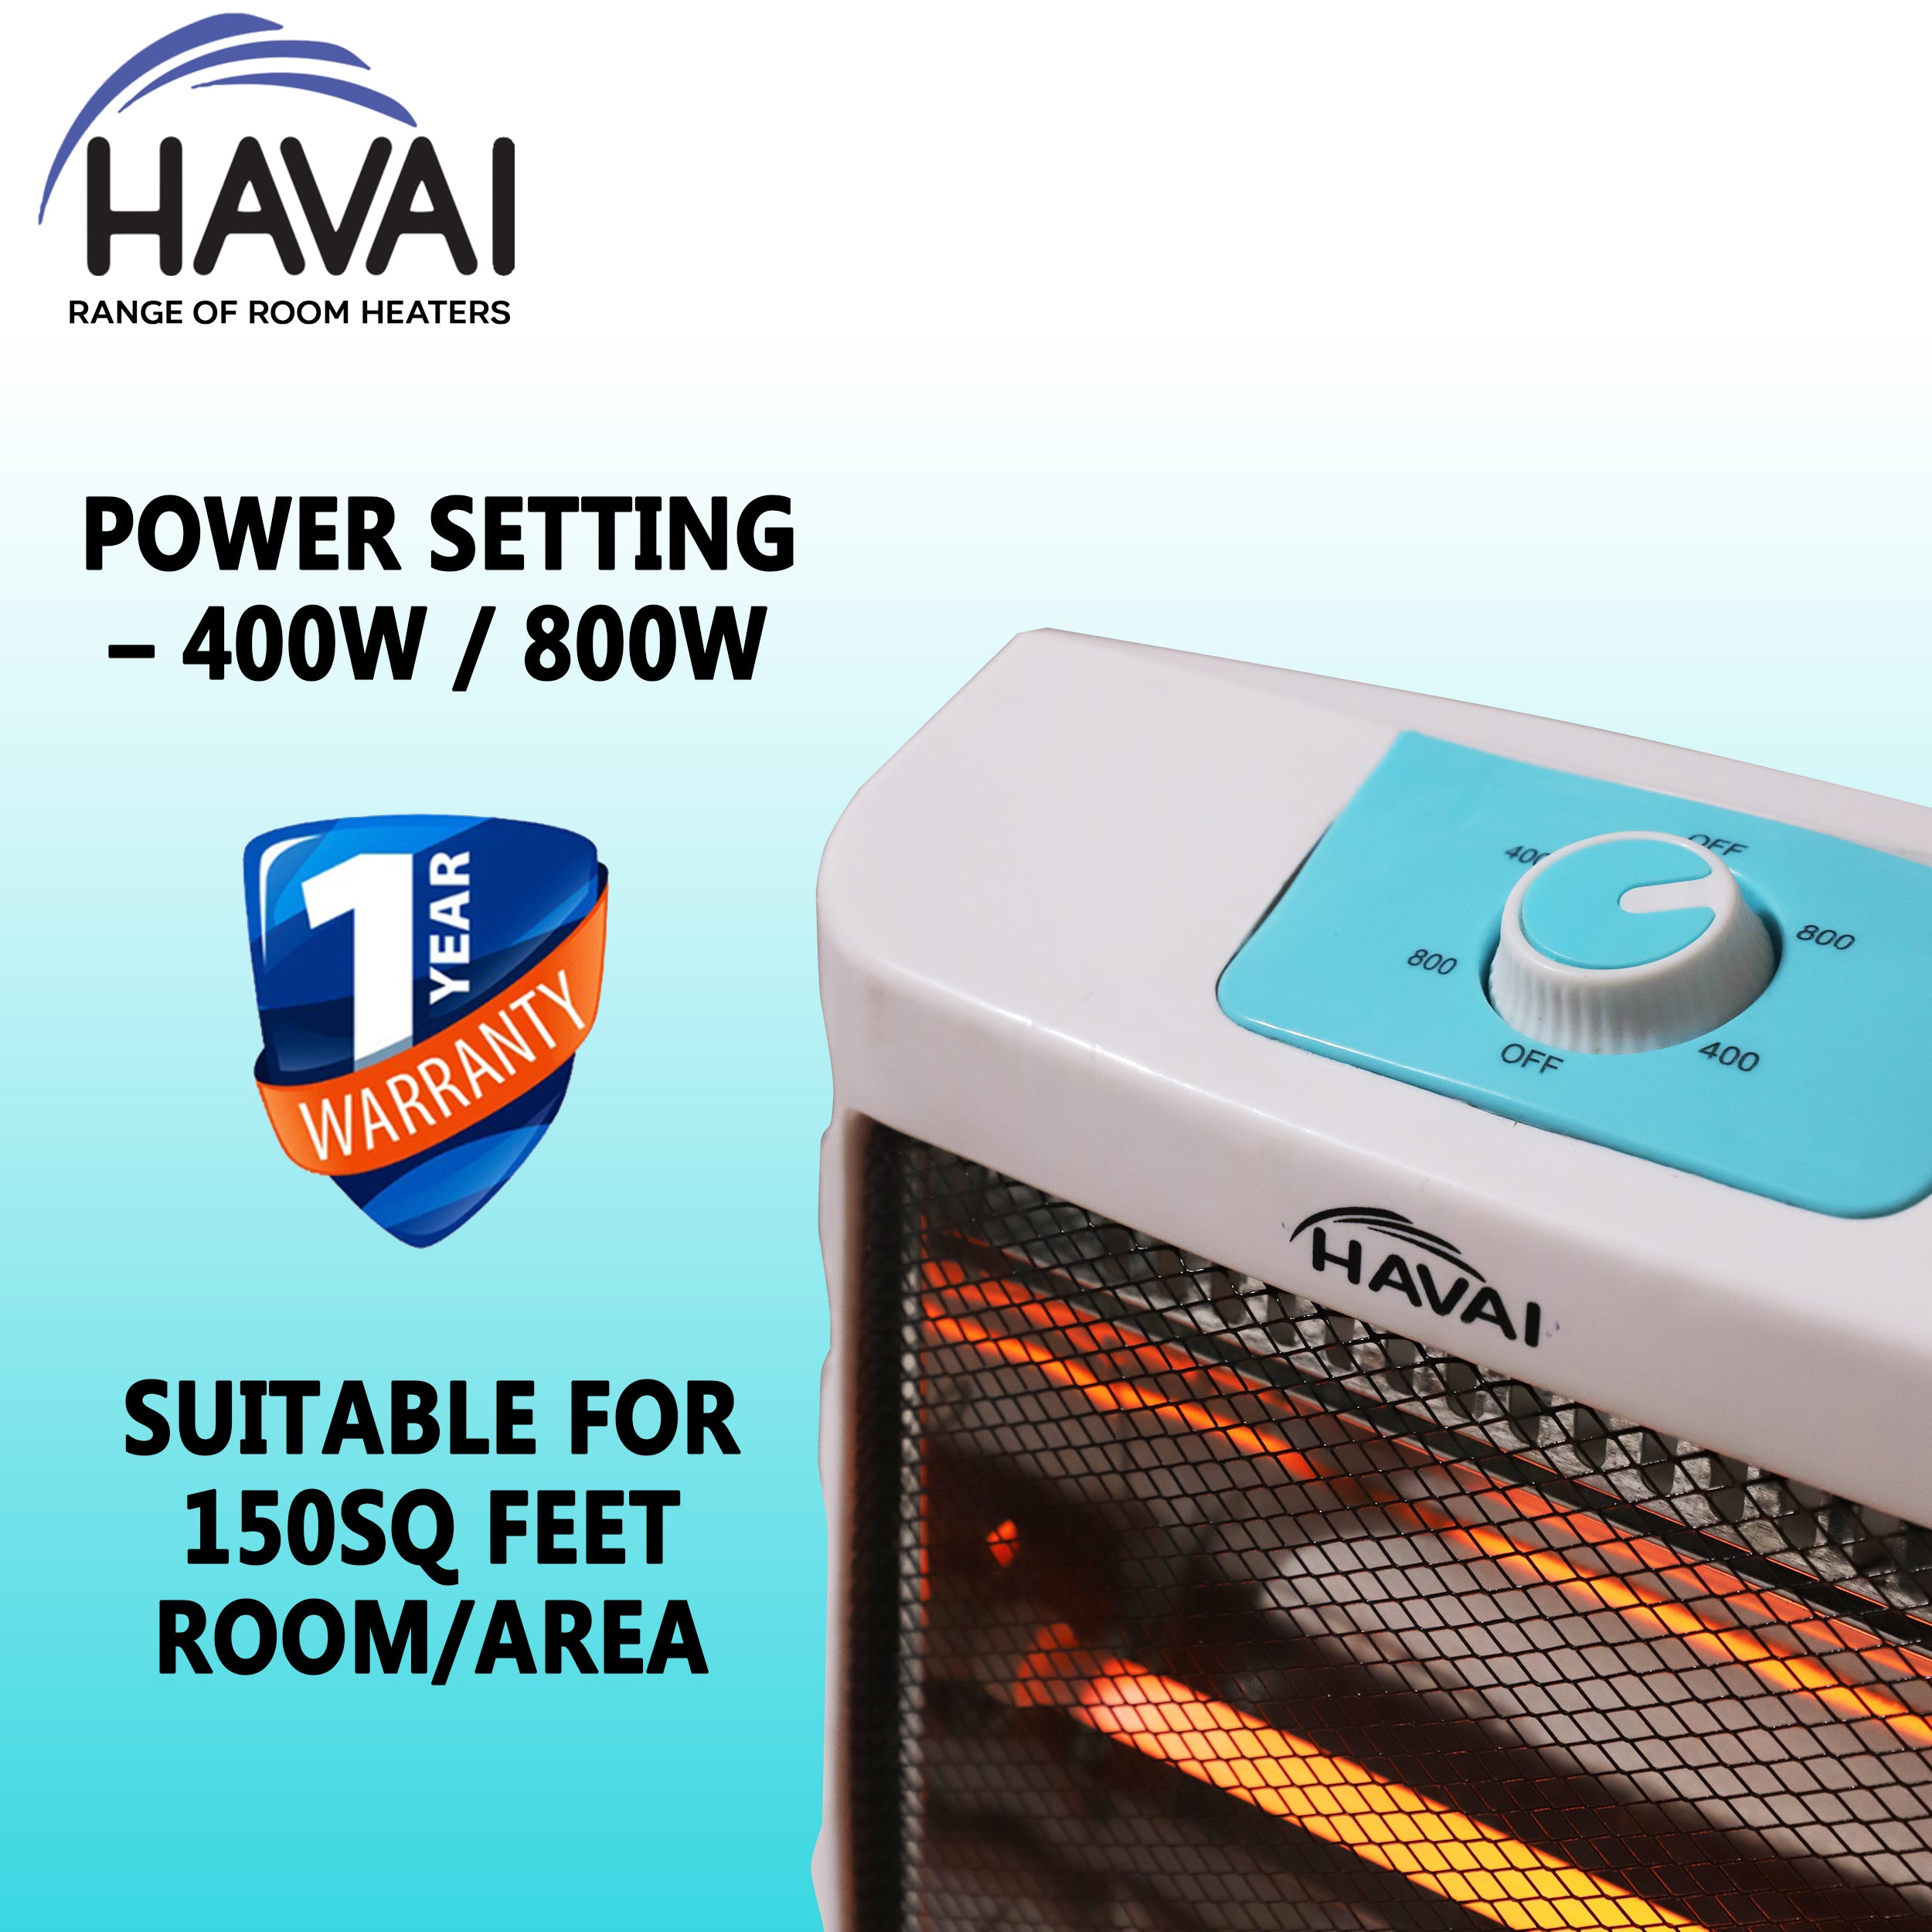 HAVAI Quartz Halogen Room Heater - 800 Watts (2 Rods, White, Blue)